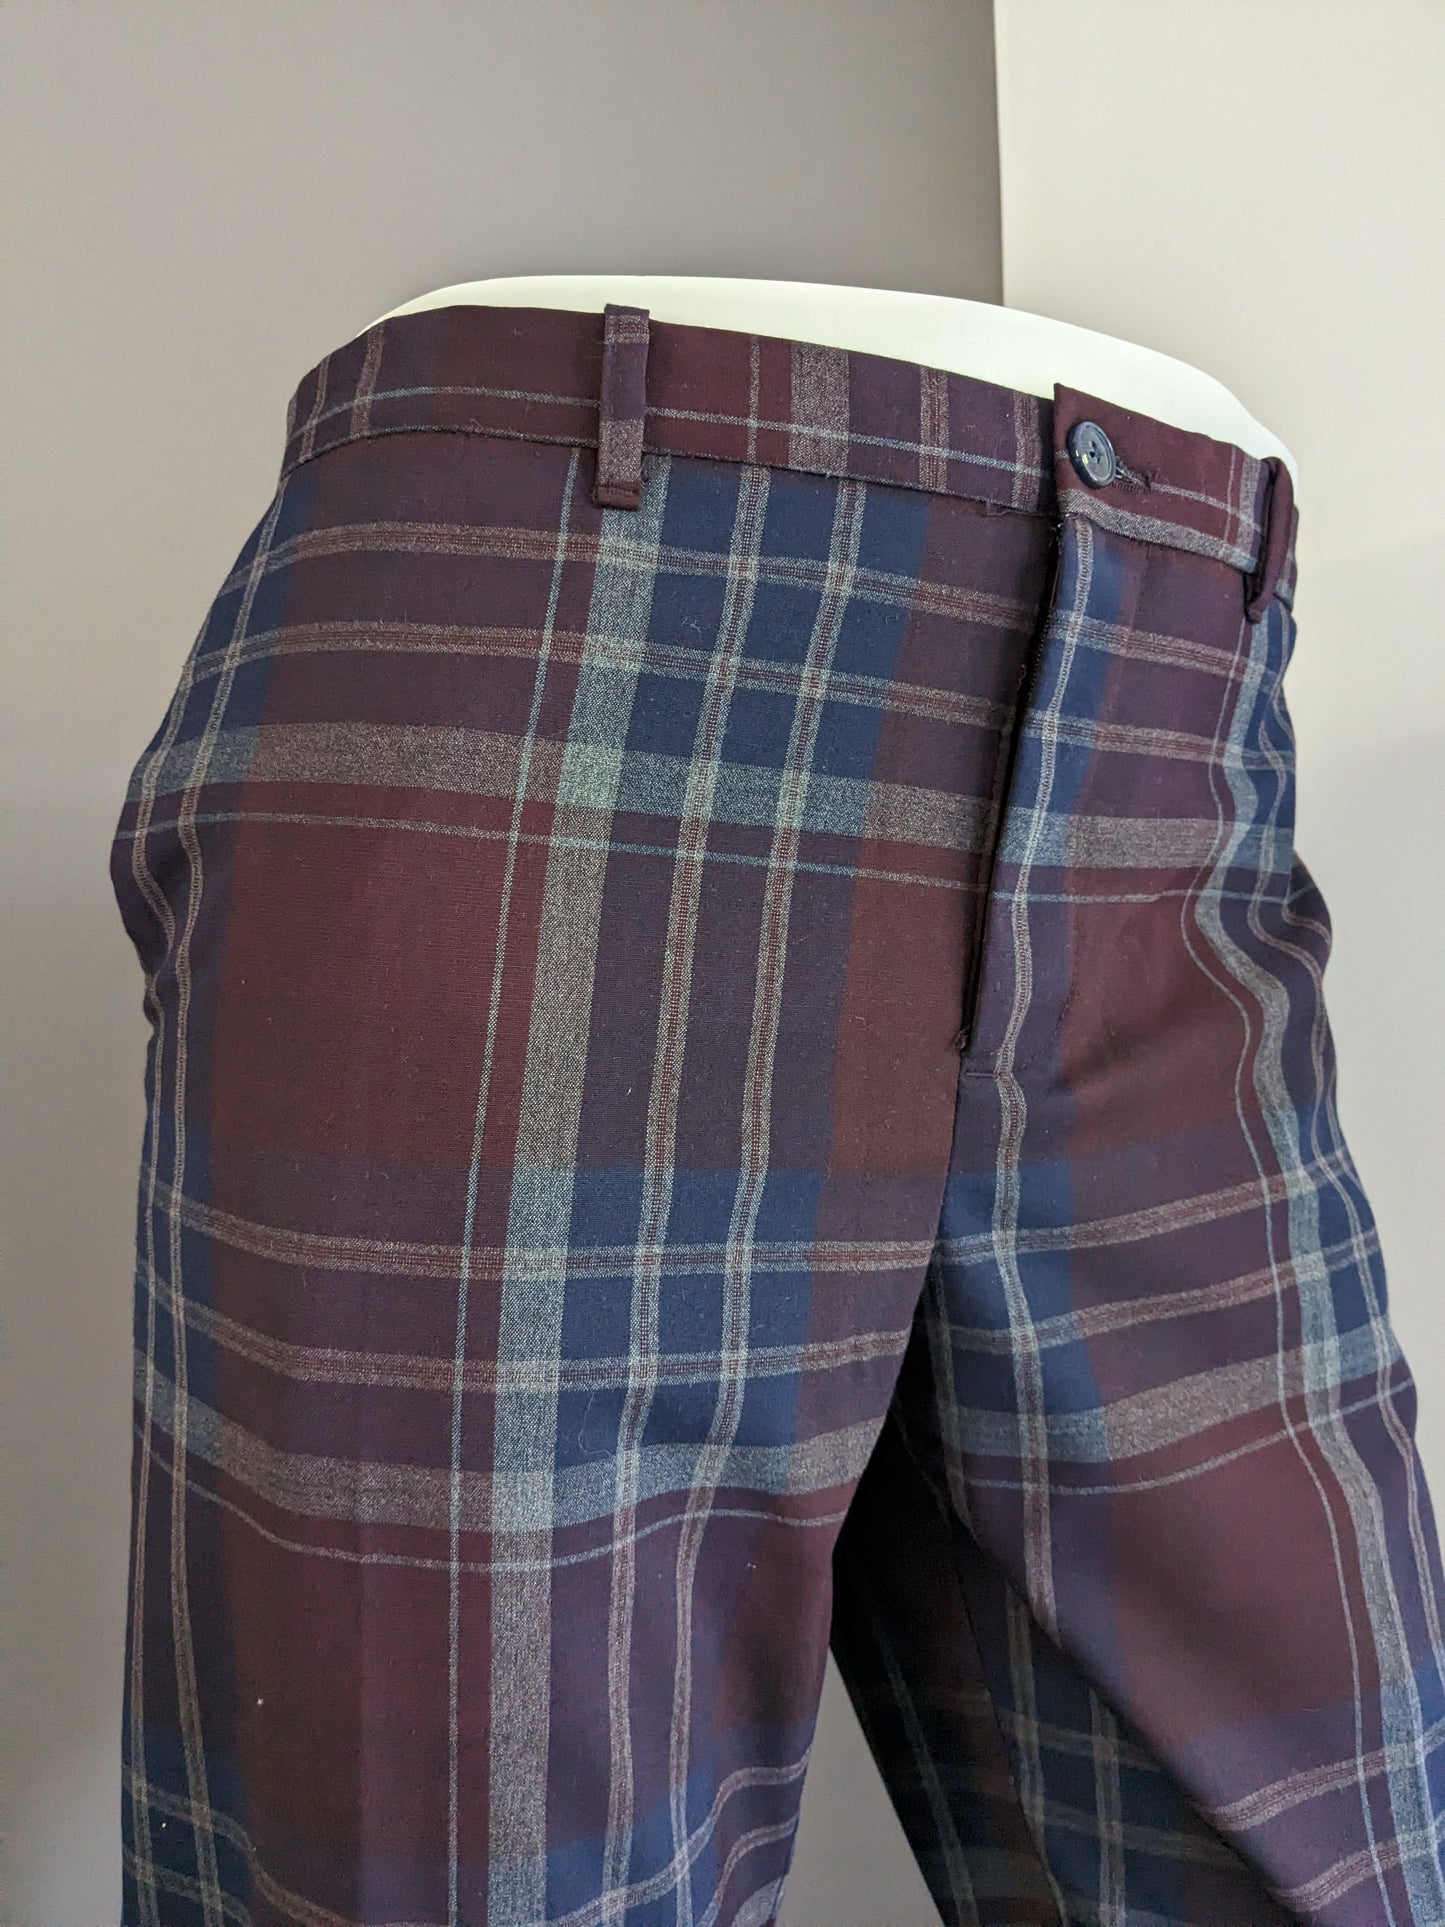 Angelo Litrico Pantalon. Vintage Look geruit. Bordeaux Blauw Grijs. Maat 54 / L. Body Fit.